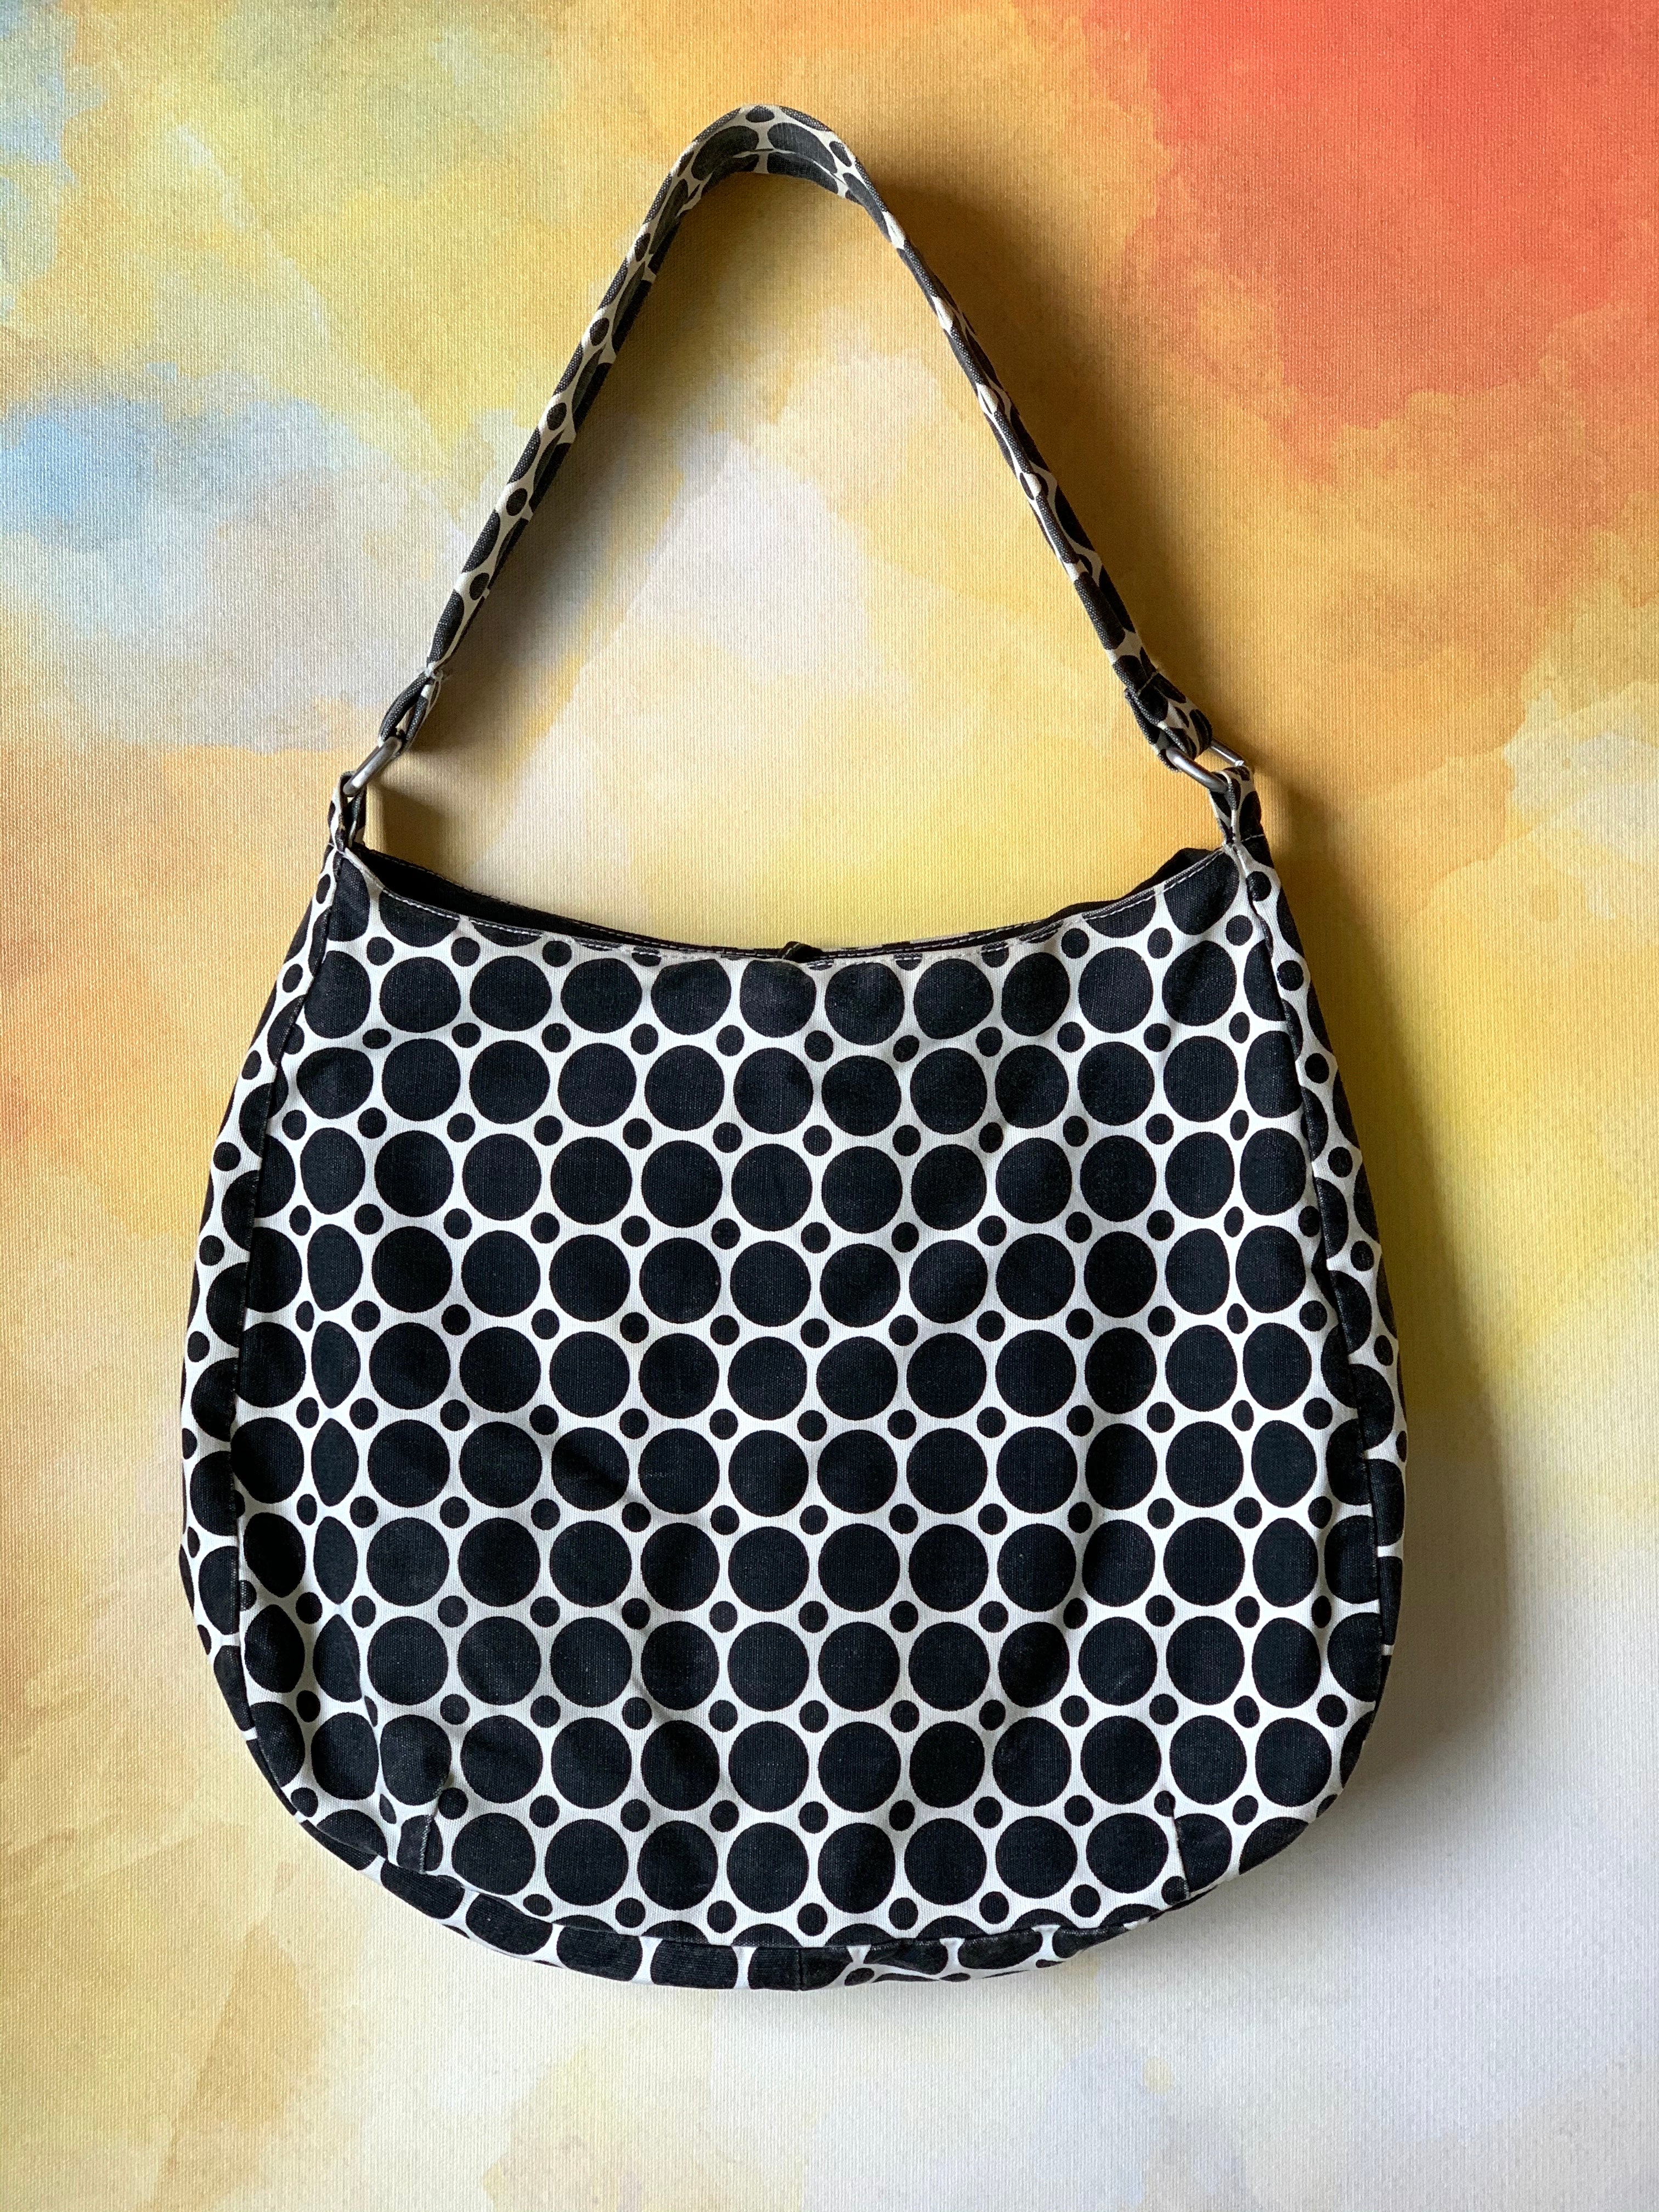 Retro Vintage Black & White Polka Dot Handbag w/ Tie Closure